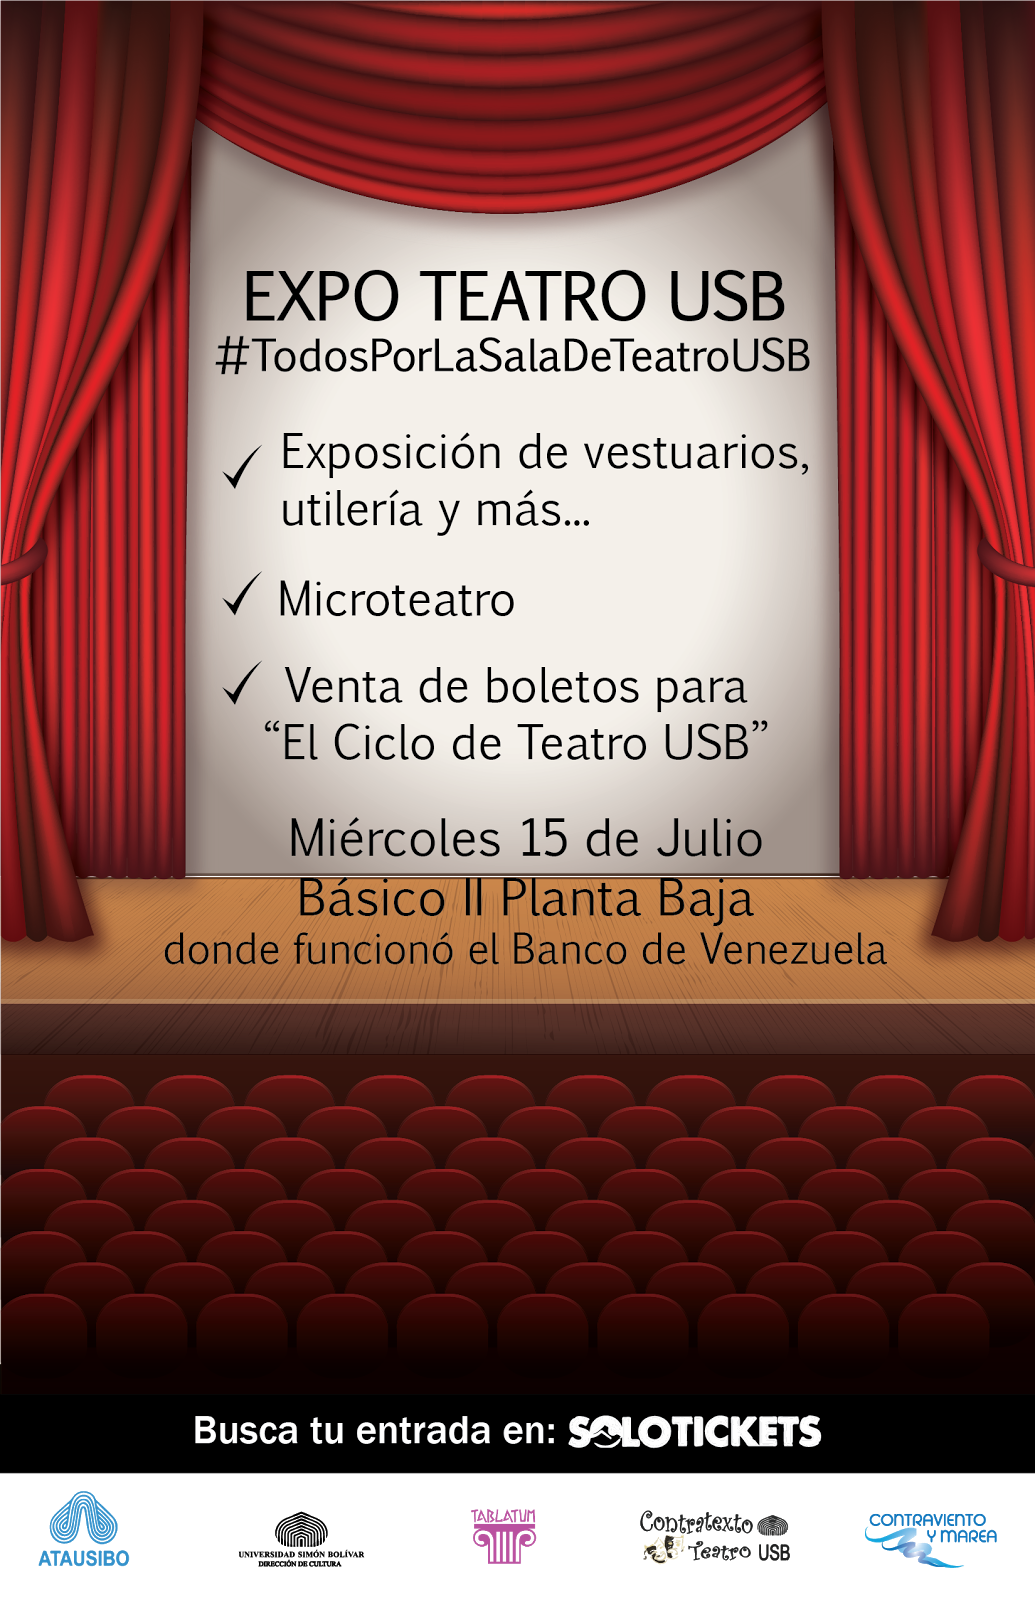 Expo teatro USB